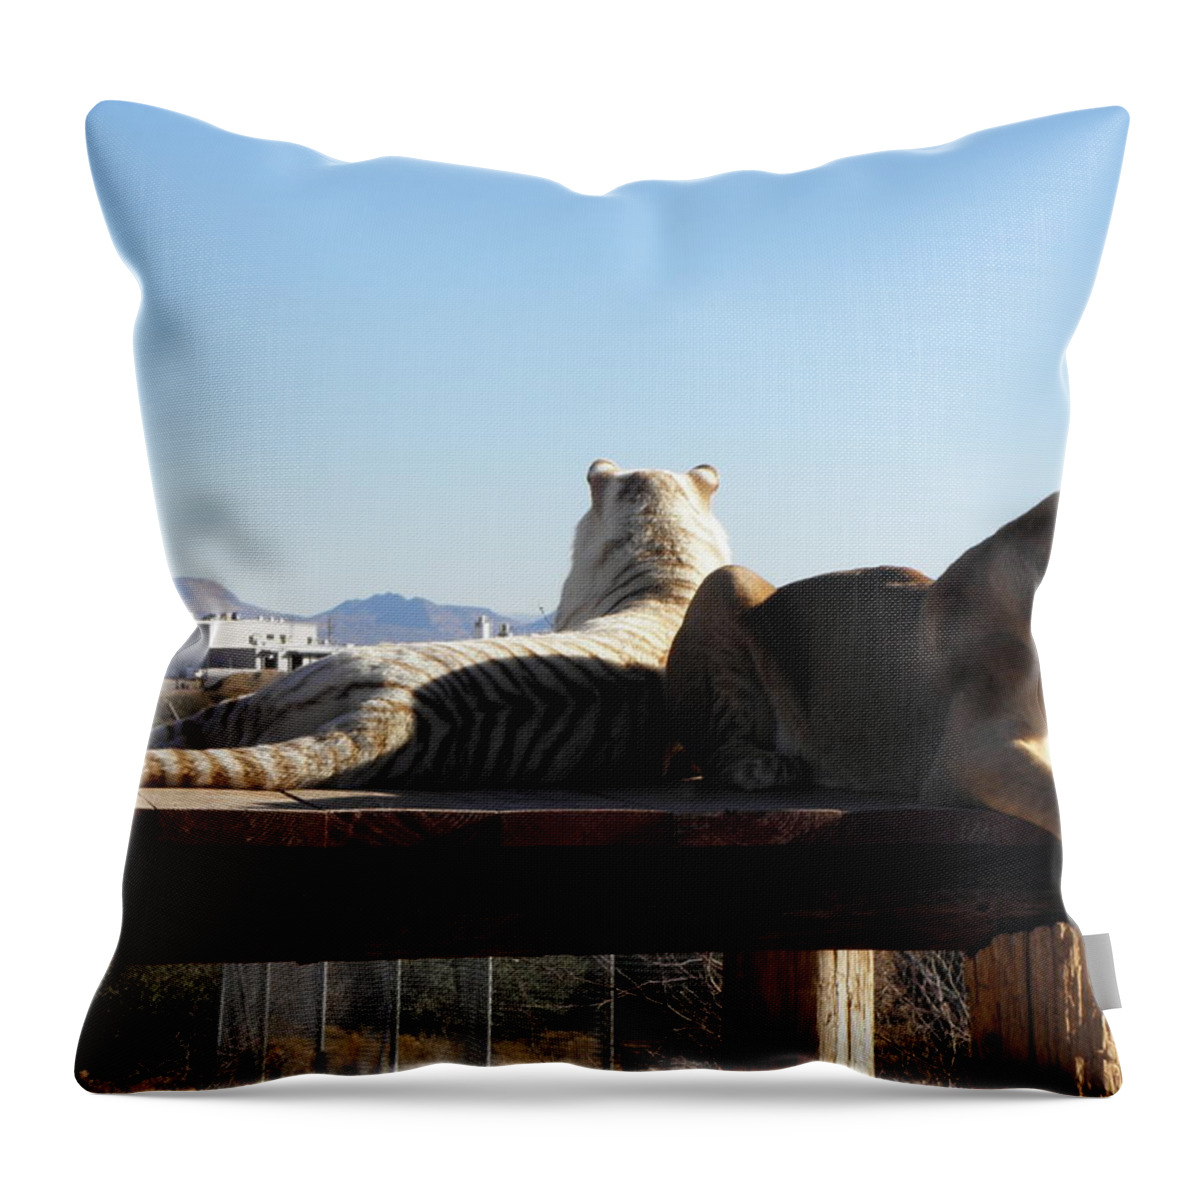 Lion Throw Pillow featuring the photograph Two Gorgeous Females by Kim Galluzzo Wozniak